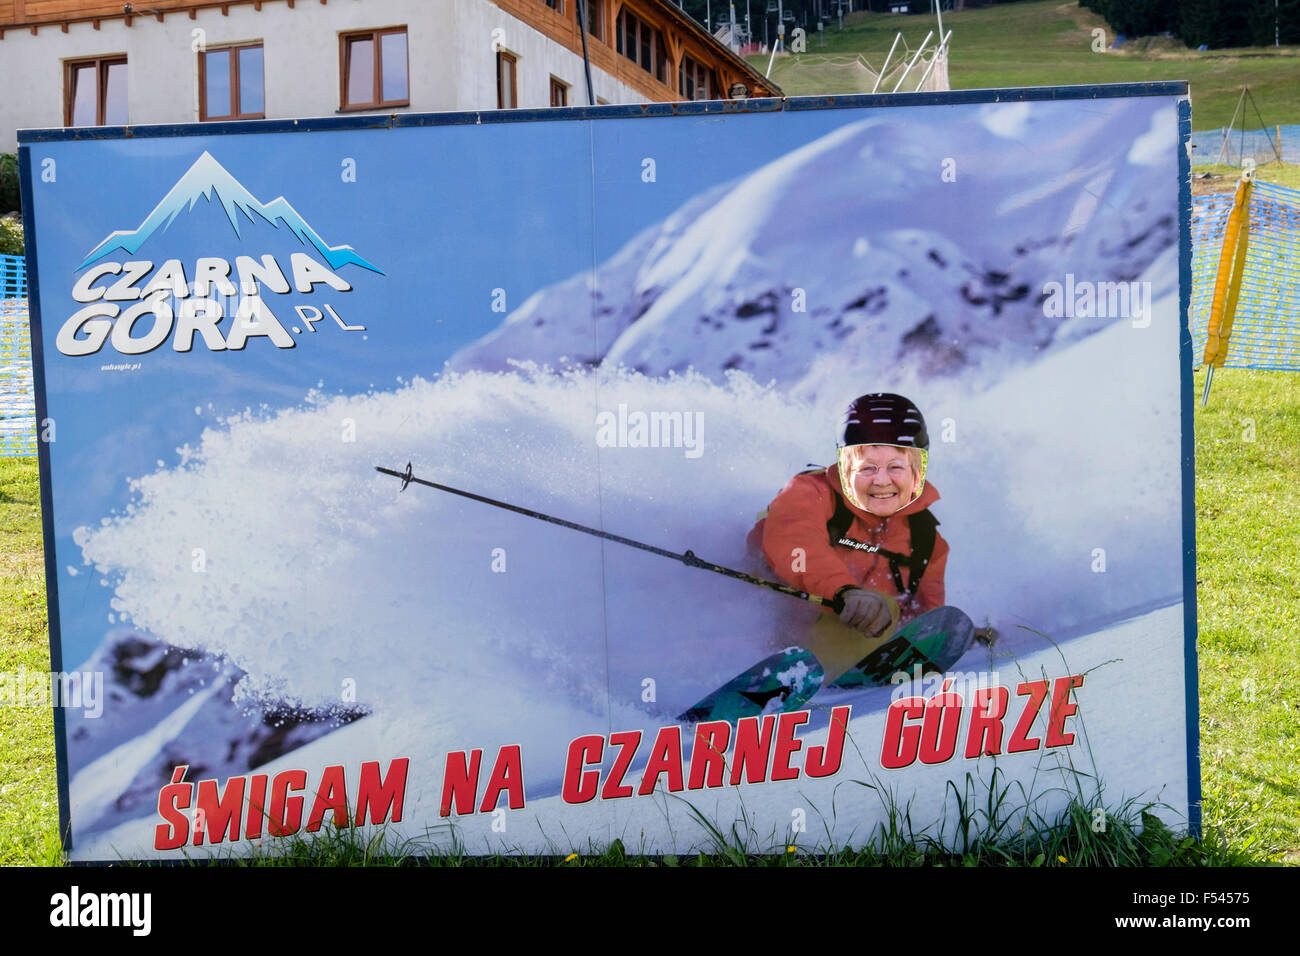 Woman posing comme un skieur dans une affiche pour ski Czarna Gora (Montagne Noire) Station de ski en Snieznicki Park Krajobrazowy. Pologne Banque D'Images